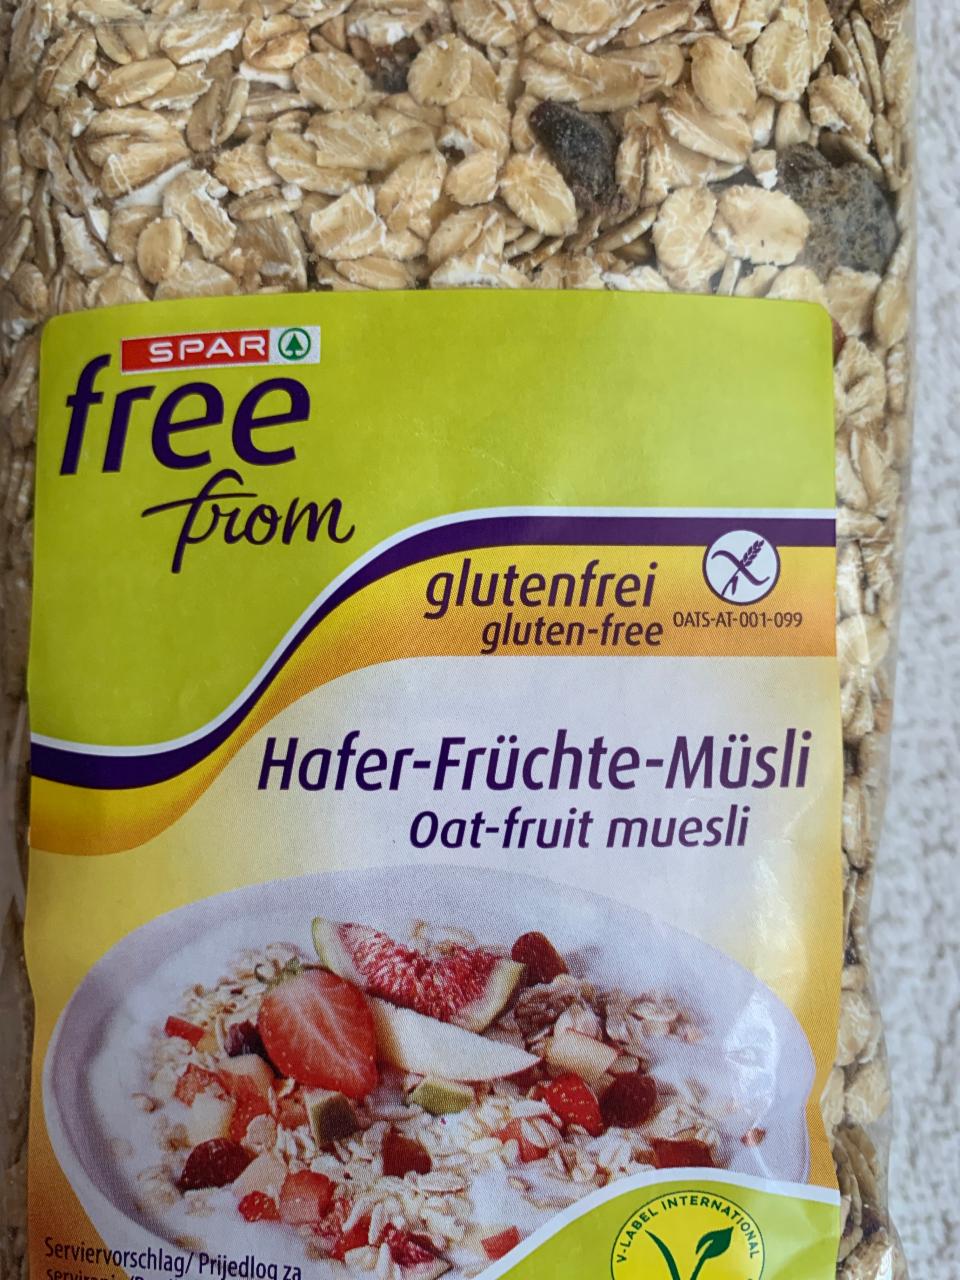 Fotografie - Hafer-Früchte-Müsli glutenfrei Spar free from